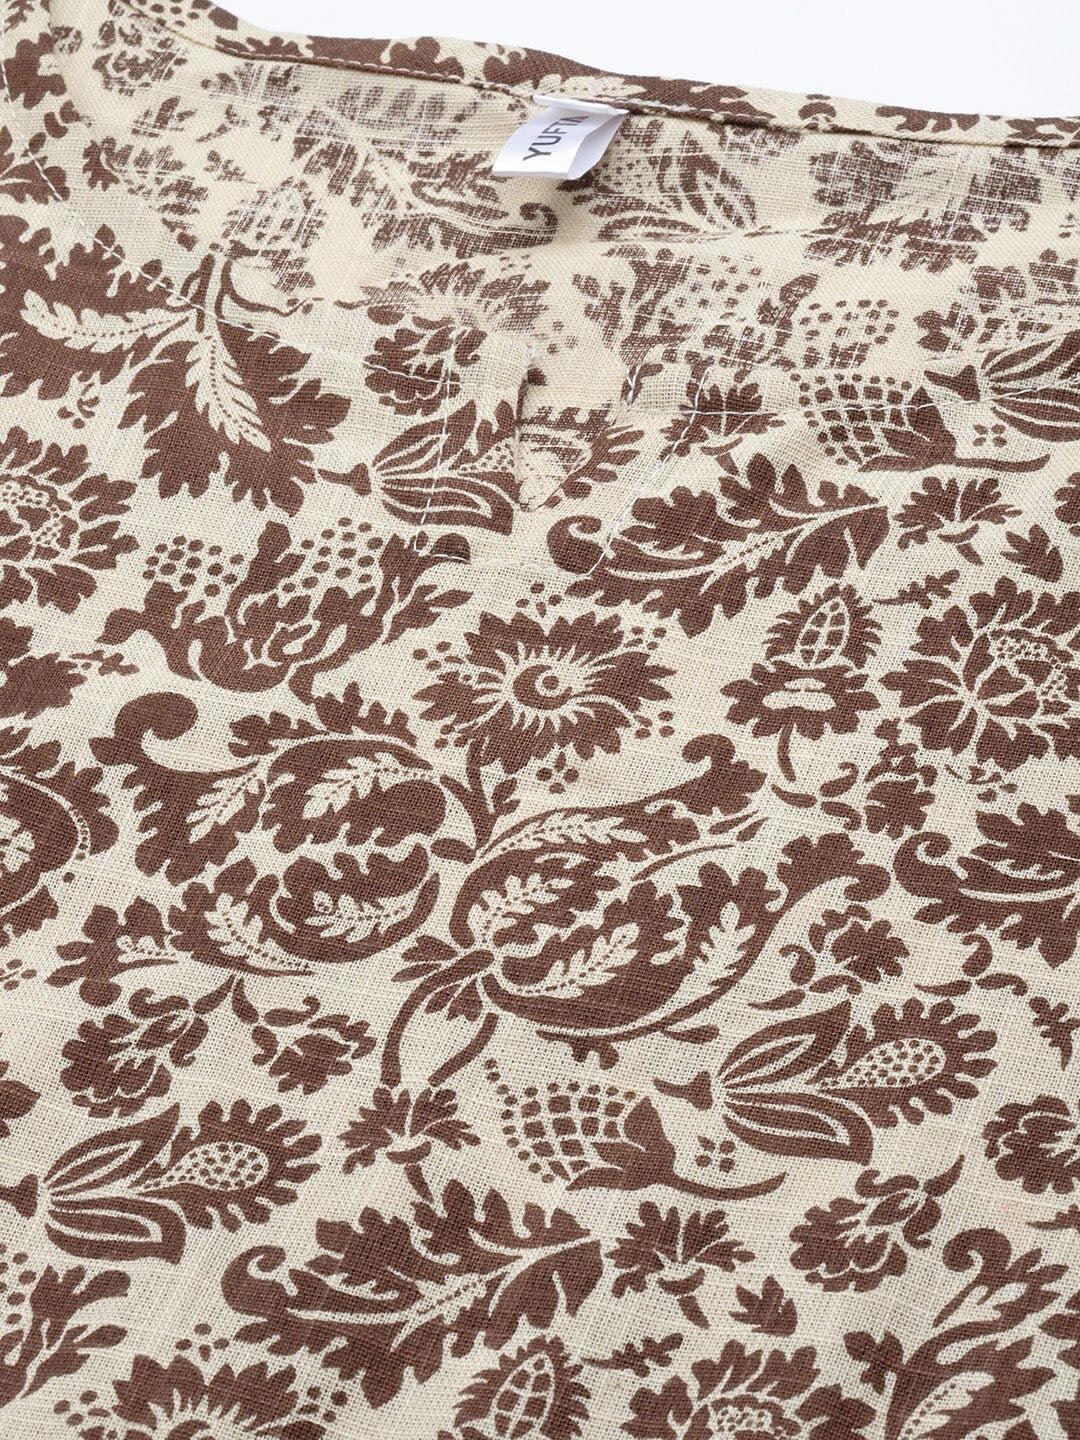 coffee-brown-beige-floral-printed-caftan-10121047BR, Women Clothing, Cotton Caftan